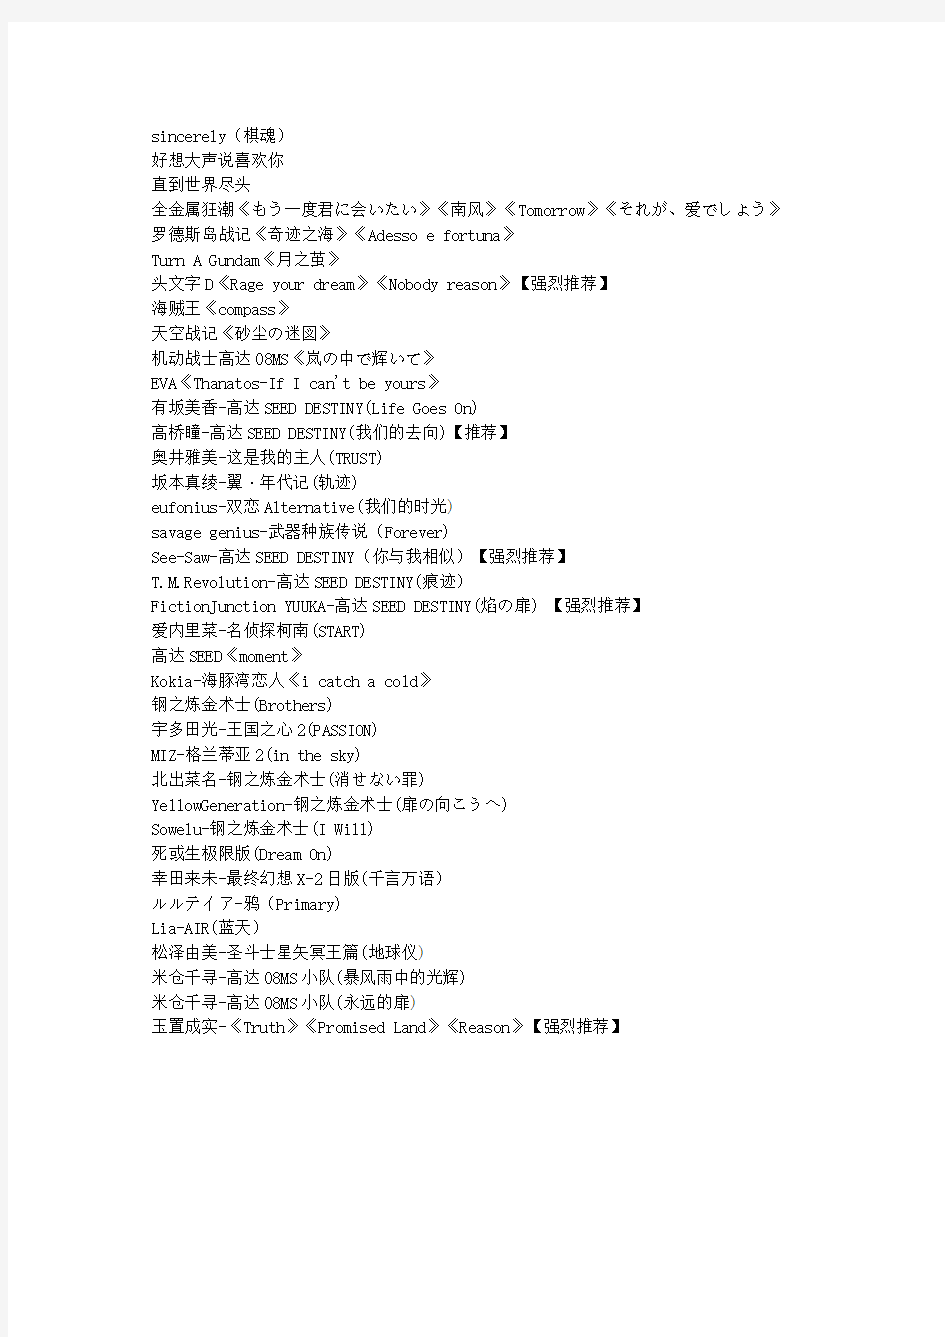 日语歌曲 文档